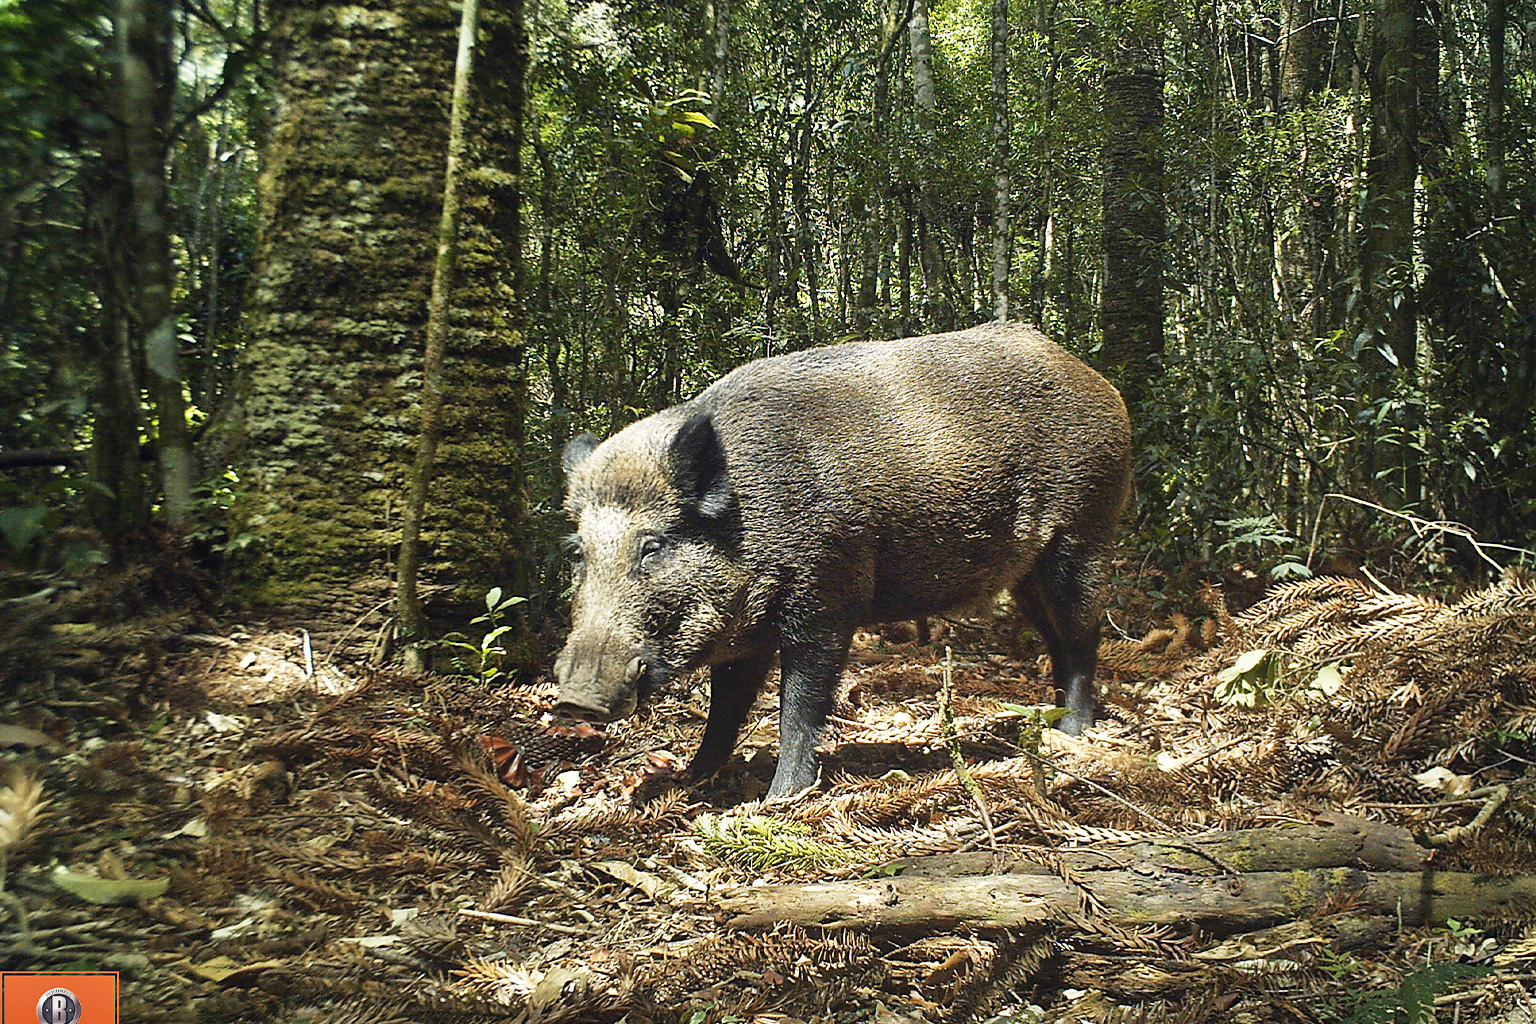 Porcos selvagens ameaçam hotspots de biodiversidade na América do Sul, mostra estudo